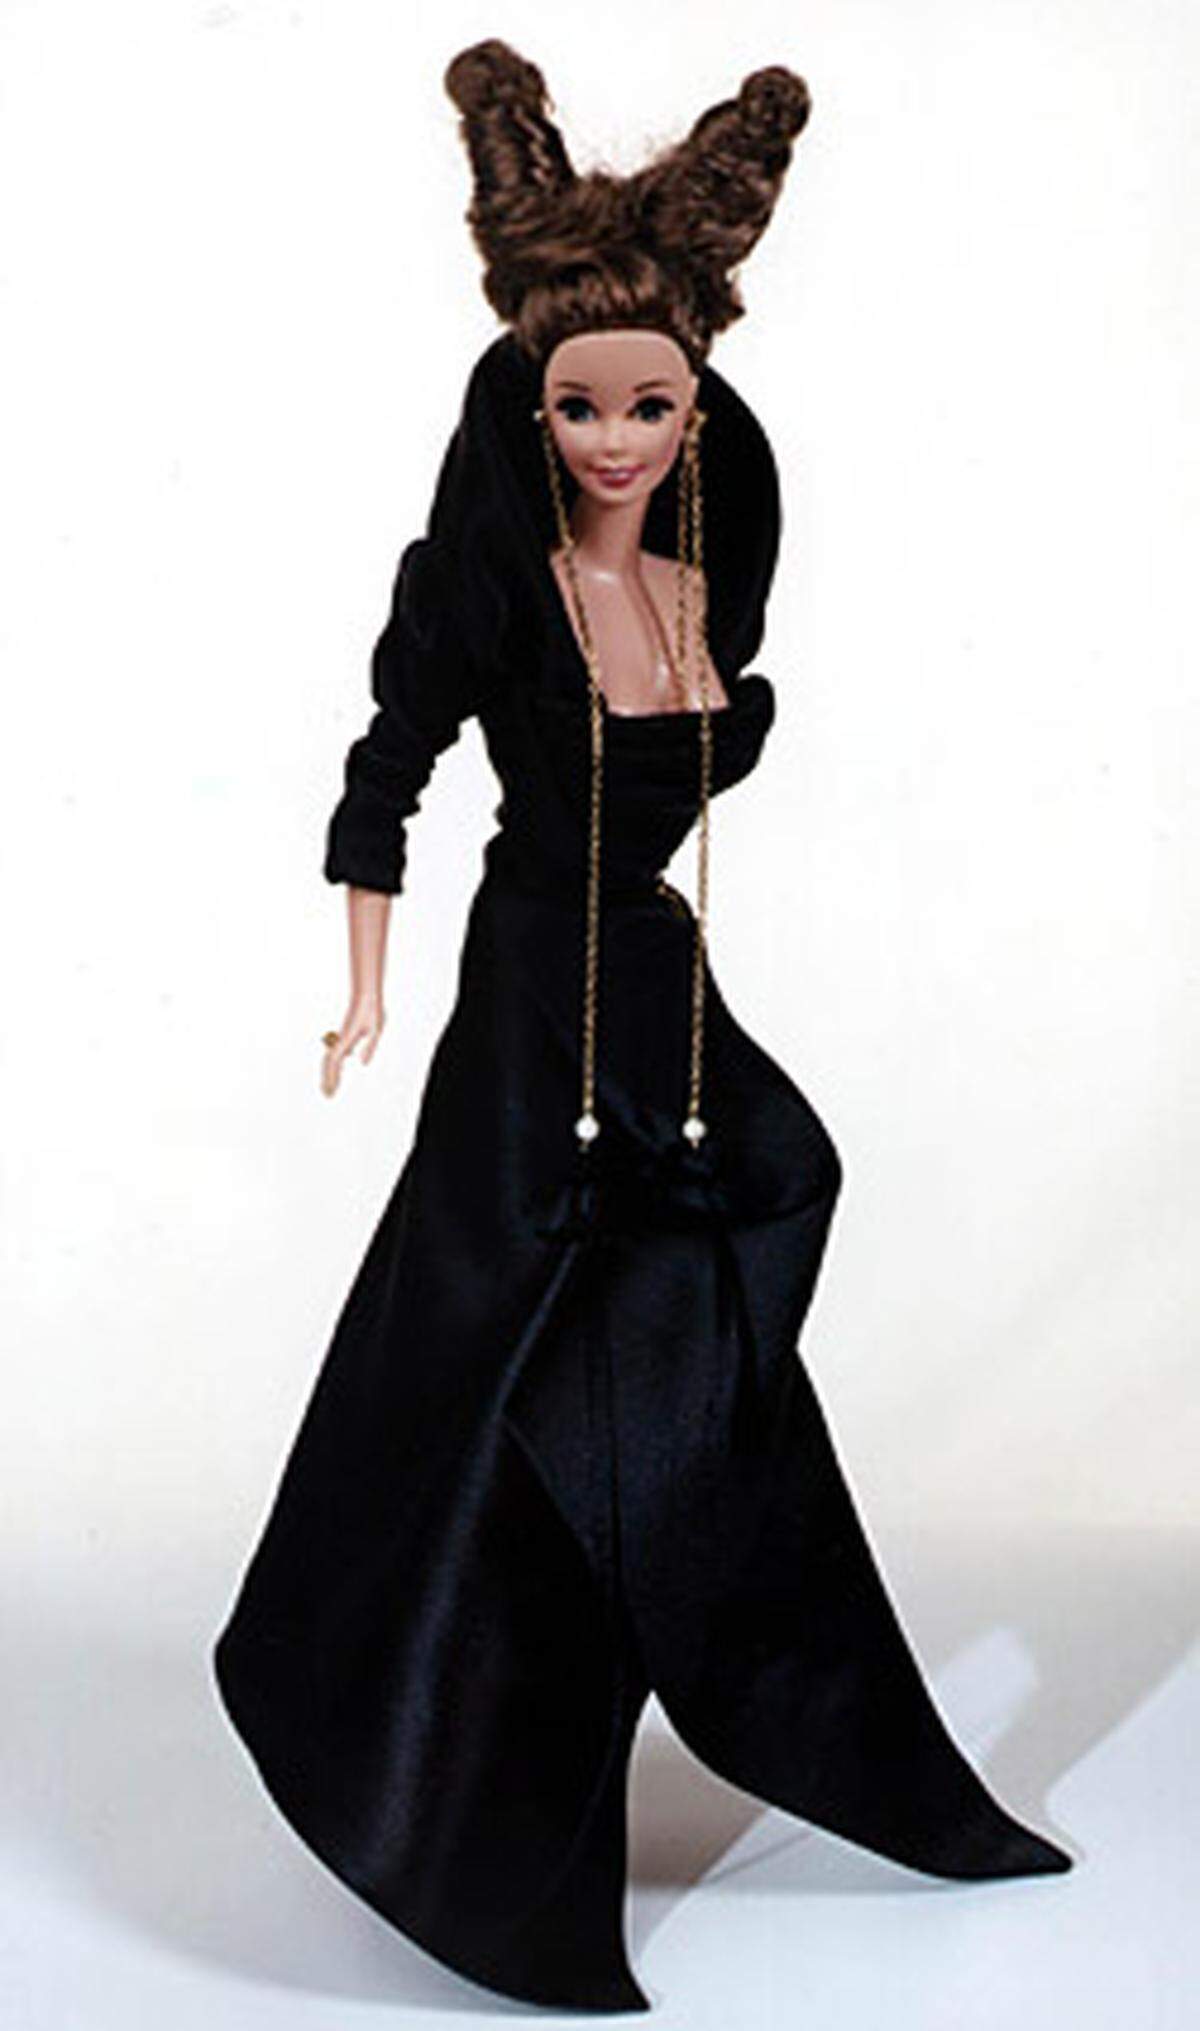 Die britische Modedesignerin Vivienne Westwood kleidete Barbie für den "Lifeball" in Wien ein.